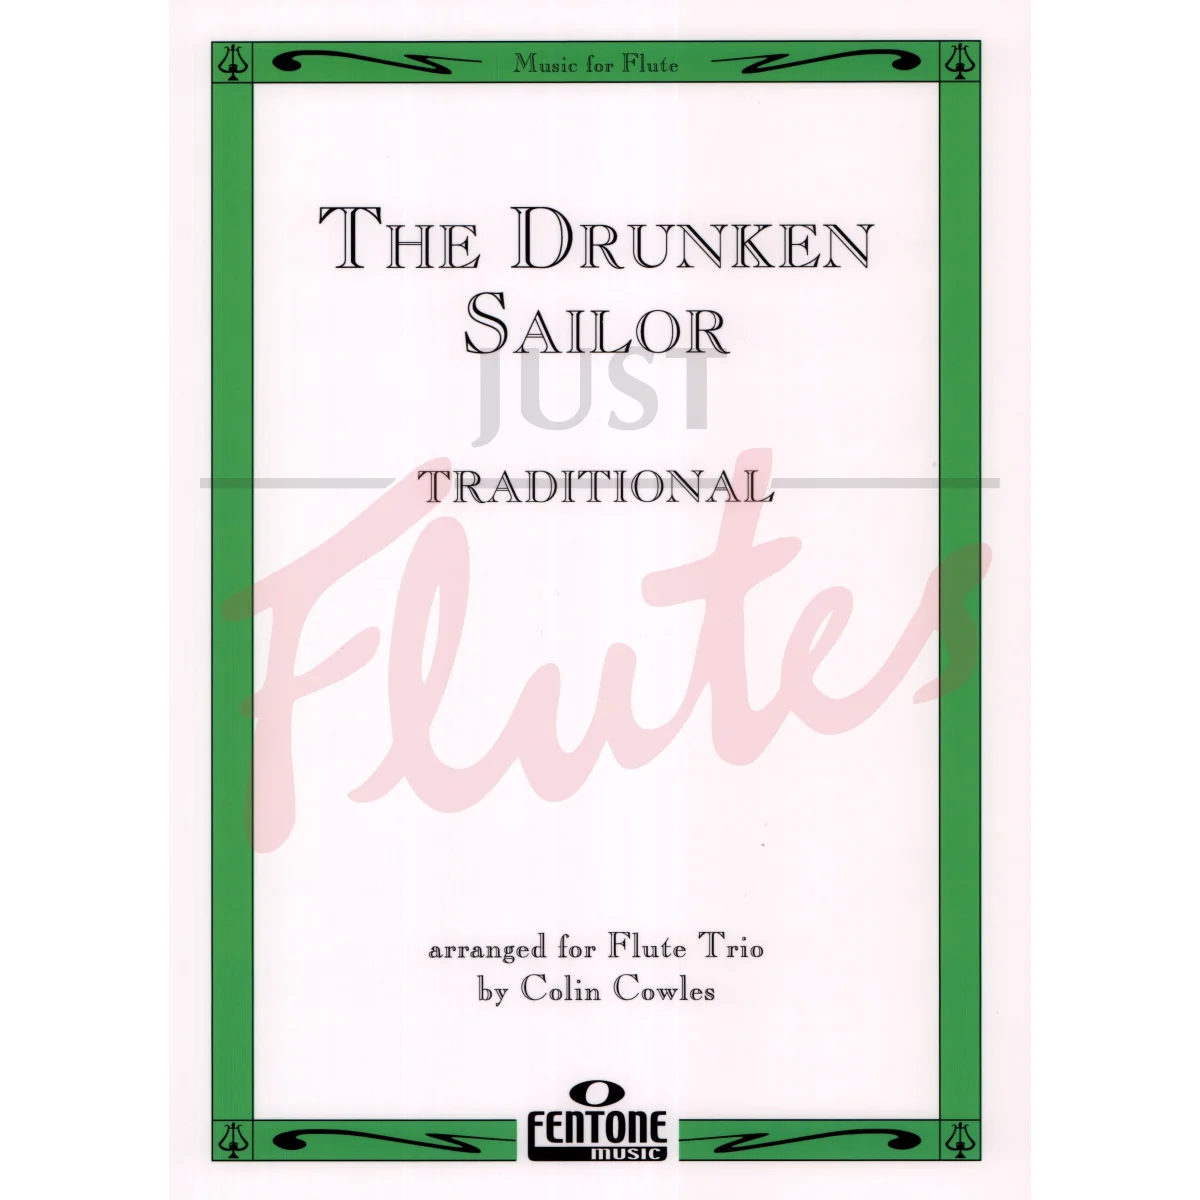 The Drunken Sailor for Flute Trio